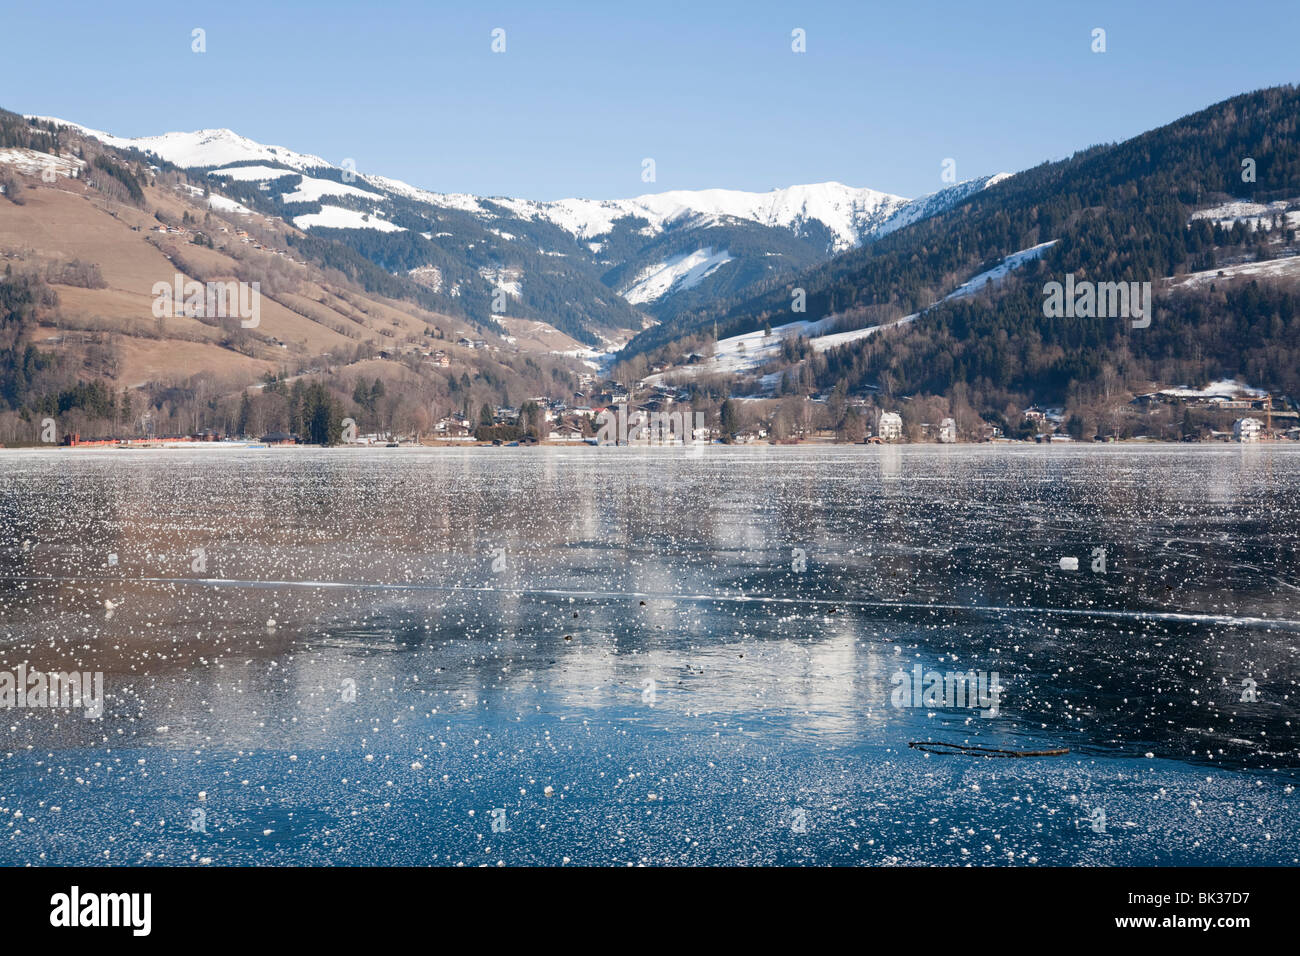 Congelati lago Zeller See con montagne innevate si riflette nel ghiaccio in località alpina. Zell am See, Austria, Europa Foto Stock